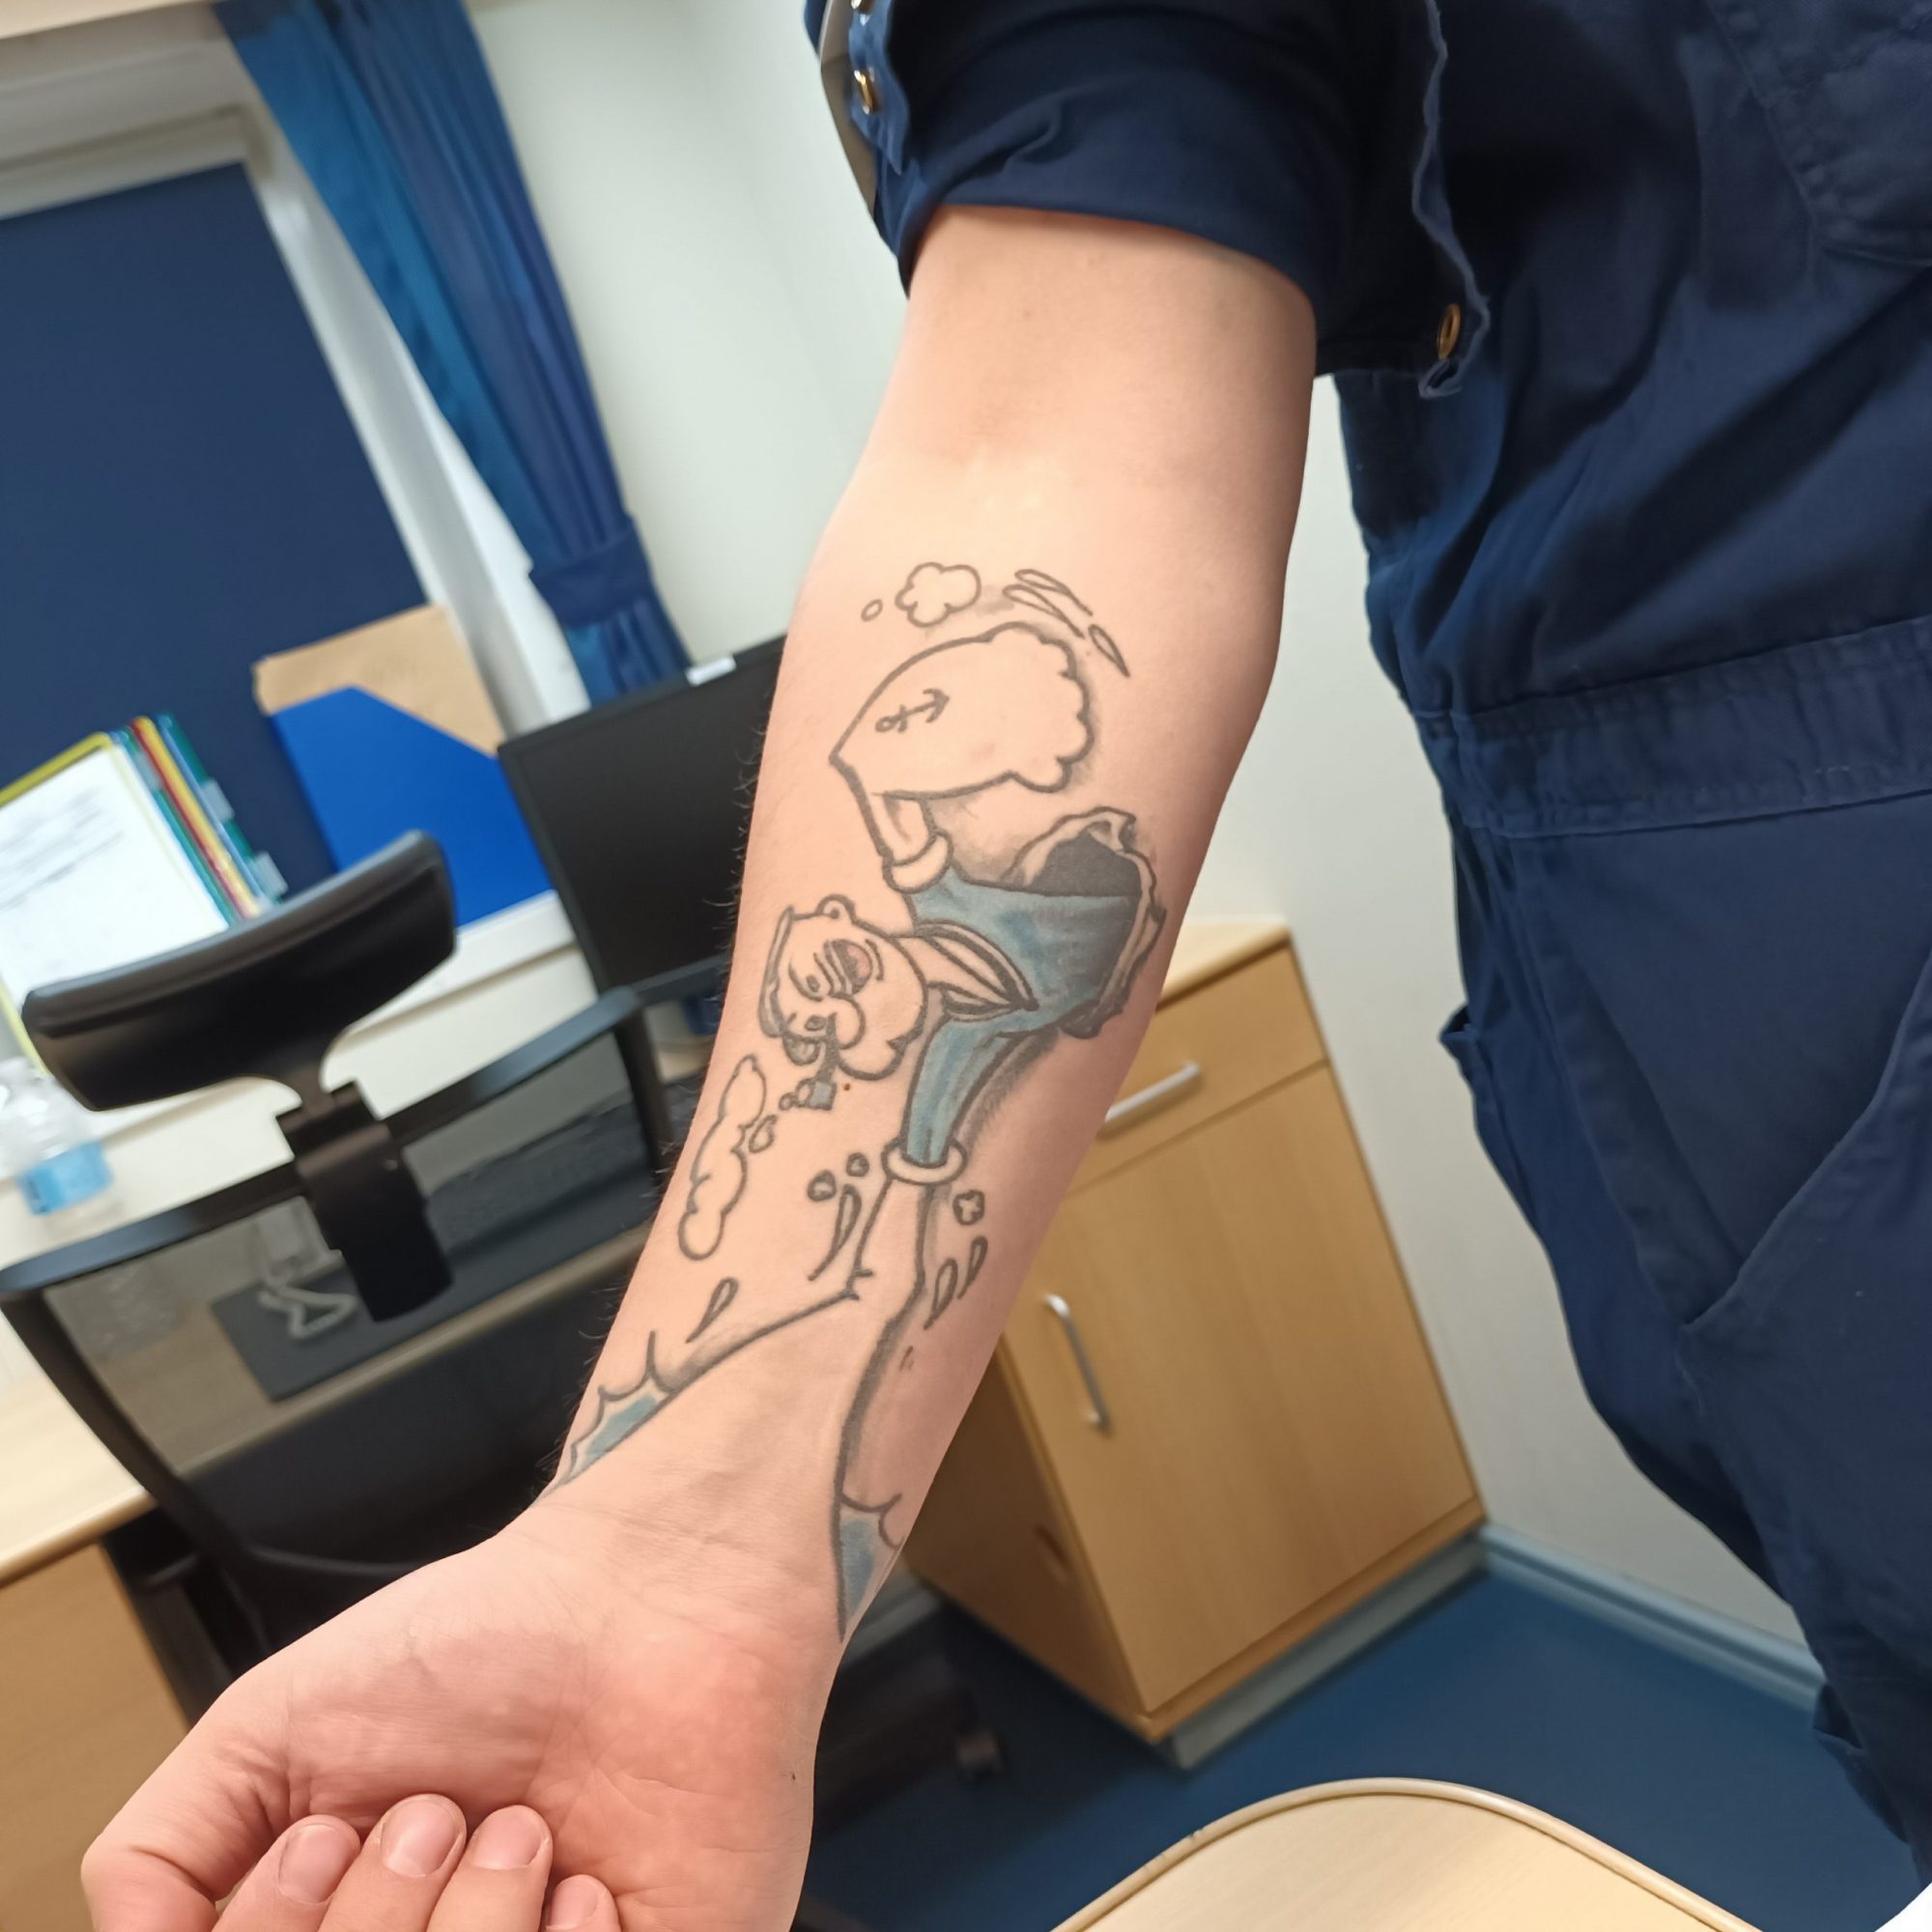 Zu sehen ist die Innenseite des rechten Unterarms eines Seemanns. Das Arbeitshemd ist hochgekrempelt, auf der Haut prangt ein Tattoo der Comicfigur Popeye.